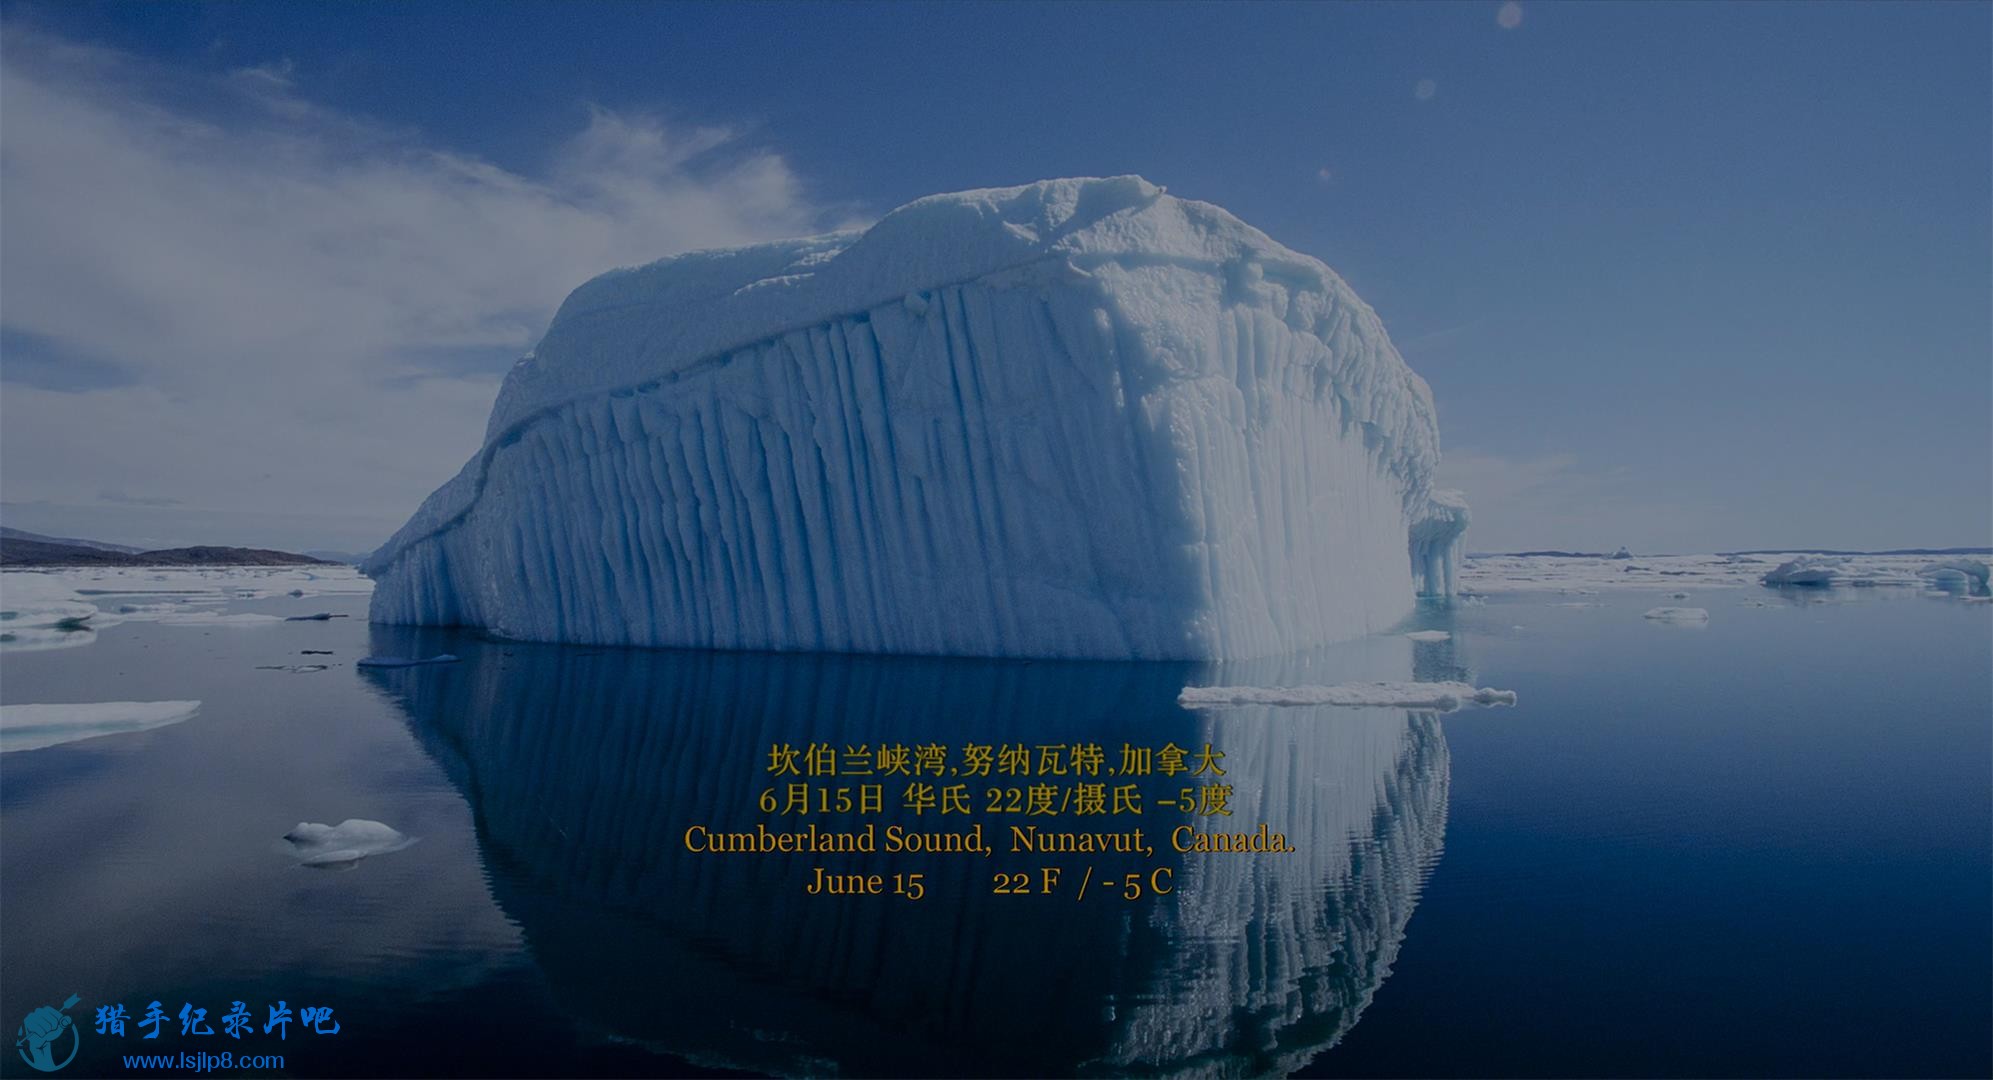 Wonders.of.the.Arctic.2014.2160p.UHD.BluRay.x265-WhiteRhino.mkv_20200704_100924.694(1).jpg